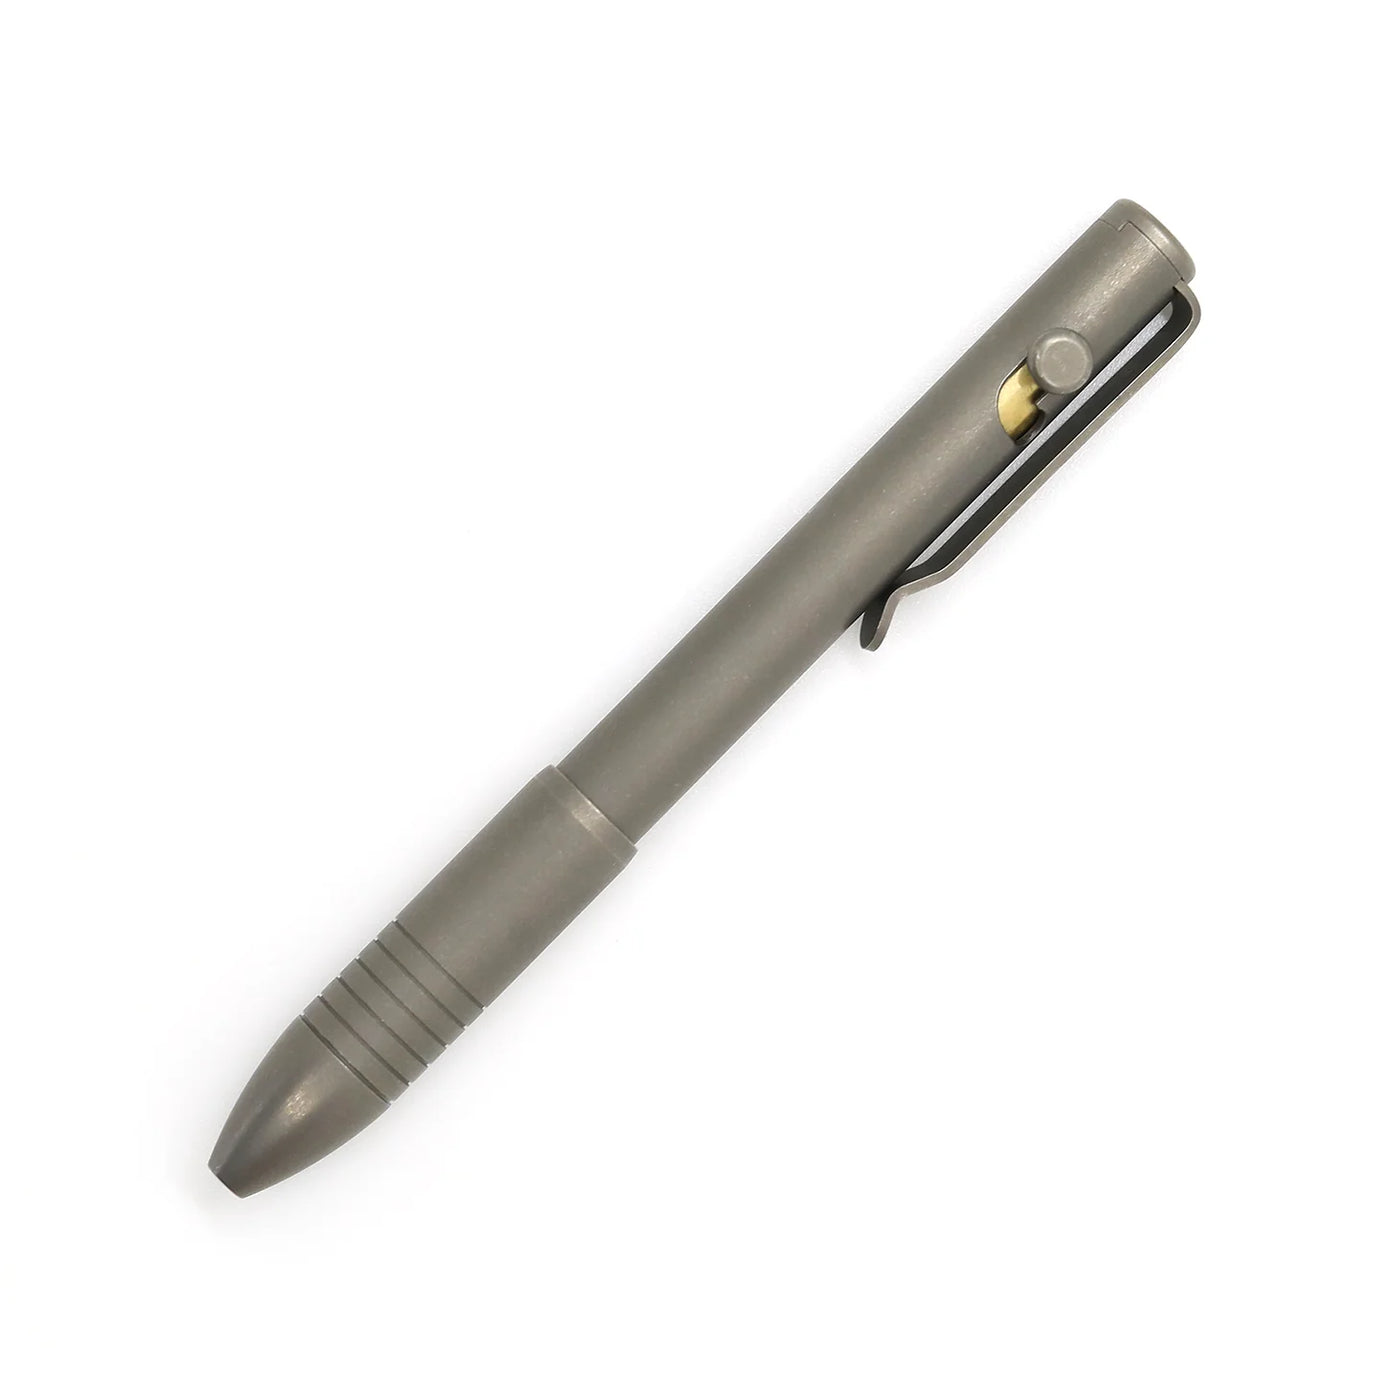 Big Idea Design - Bolt Action Pen